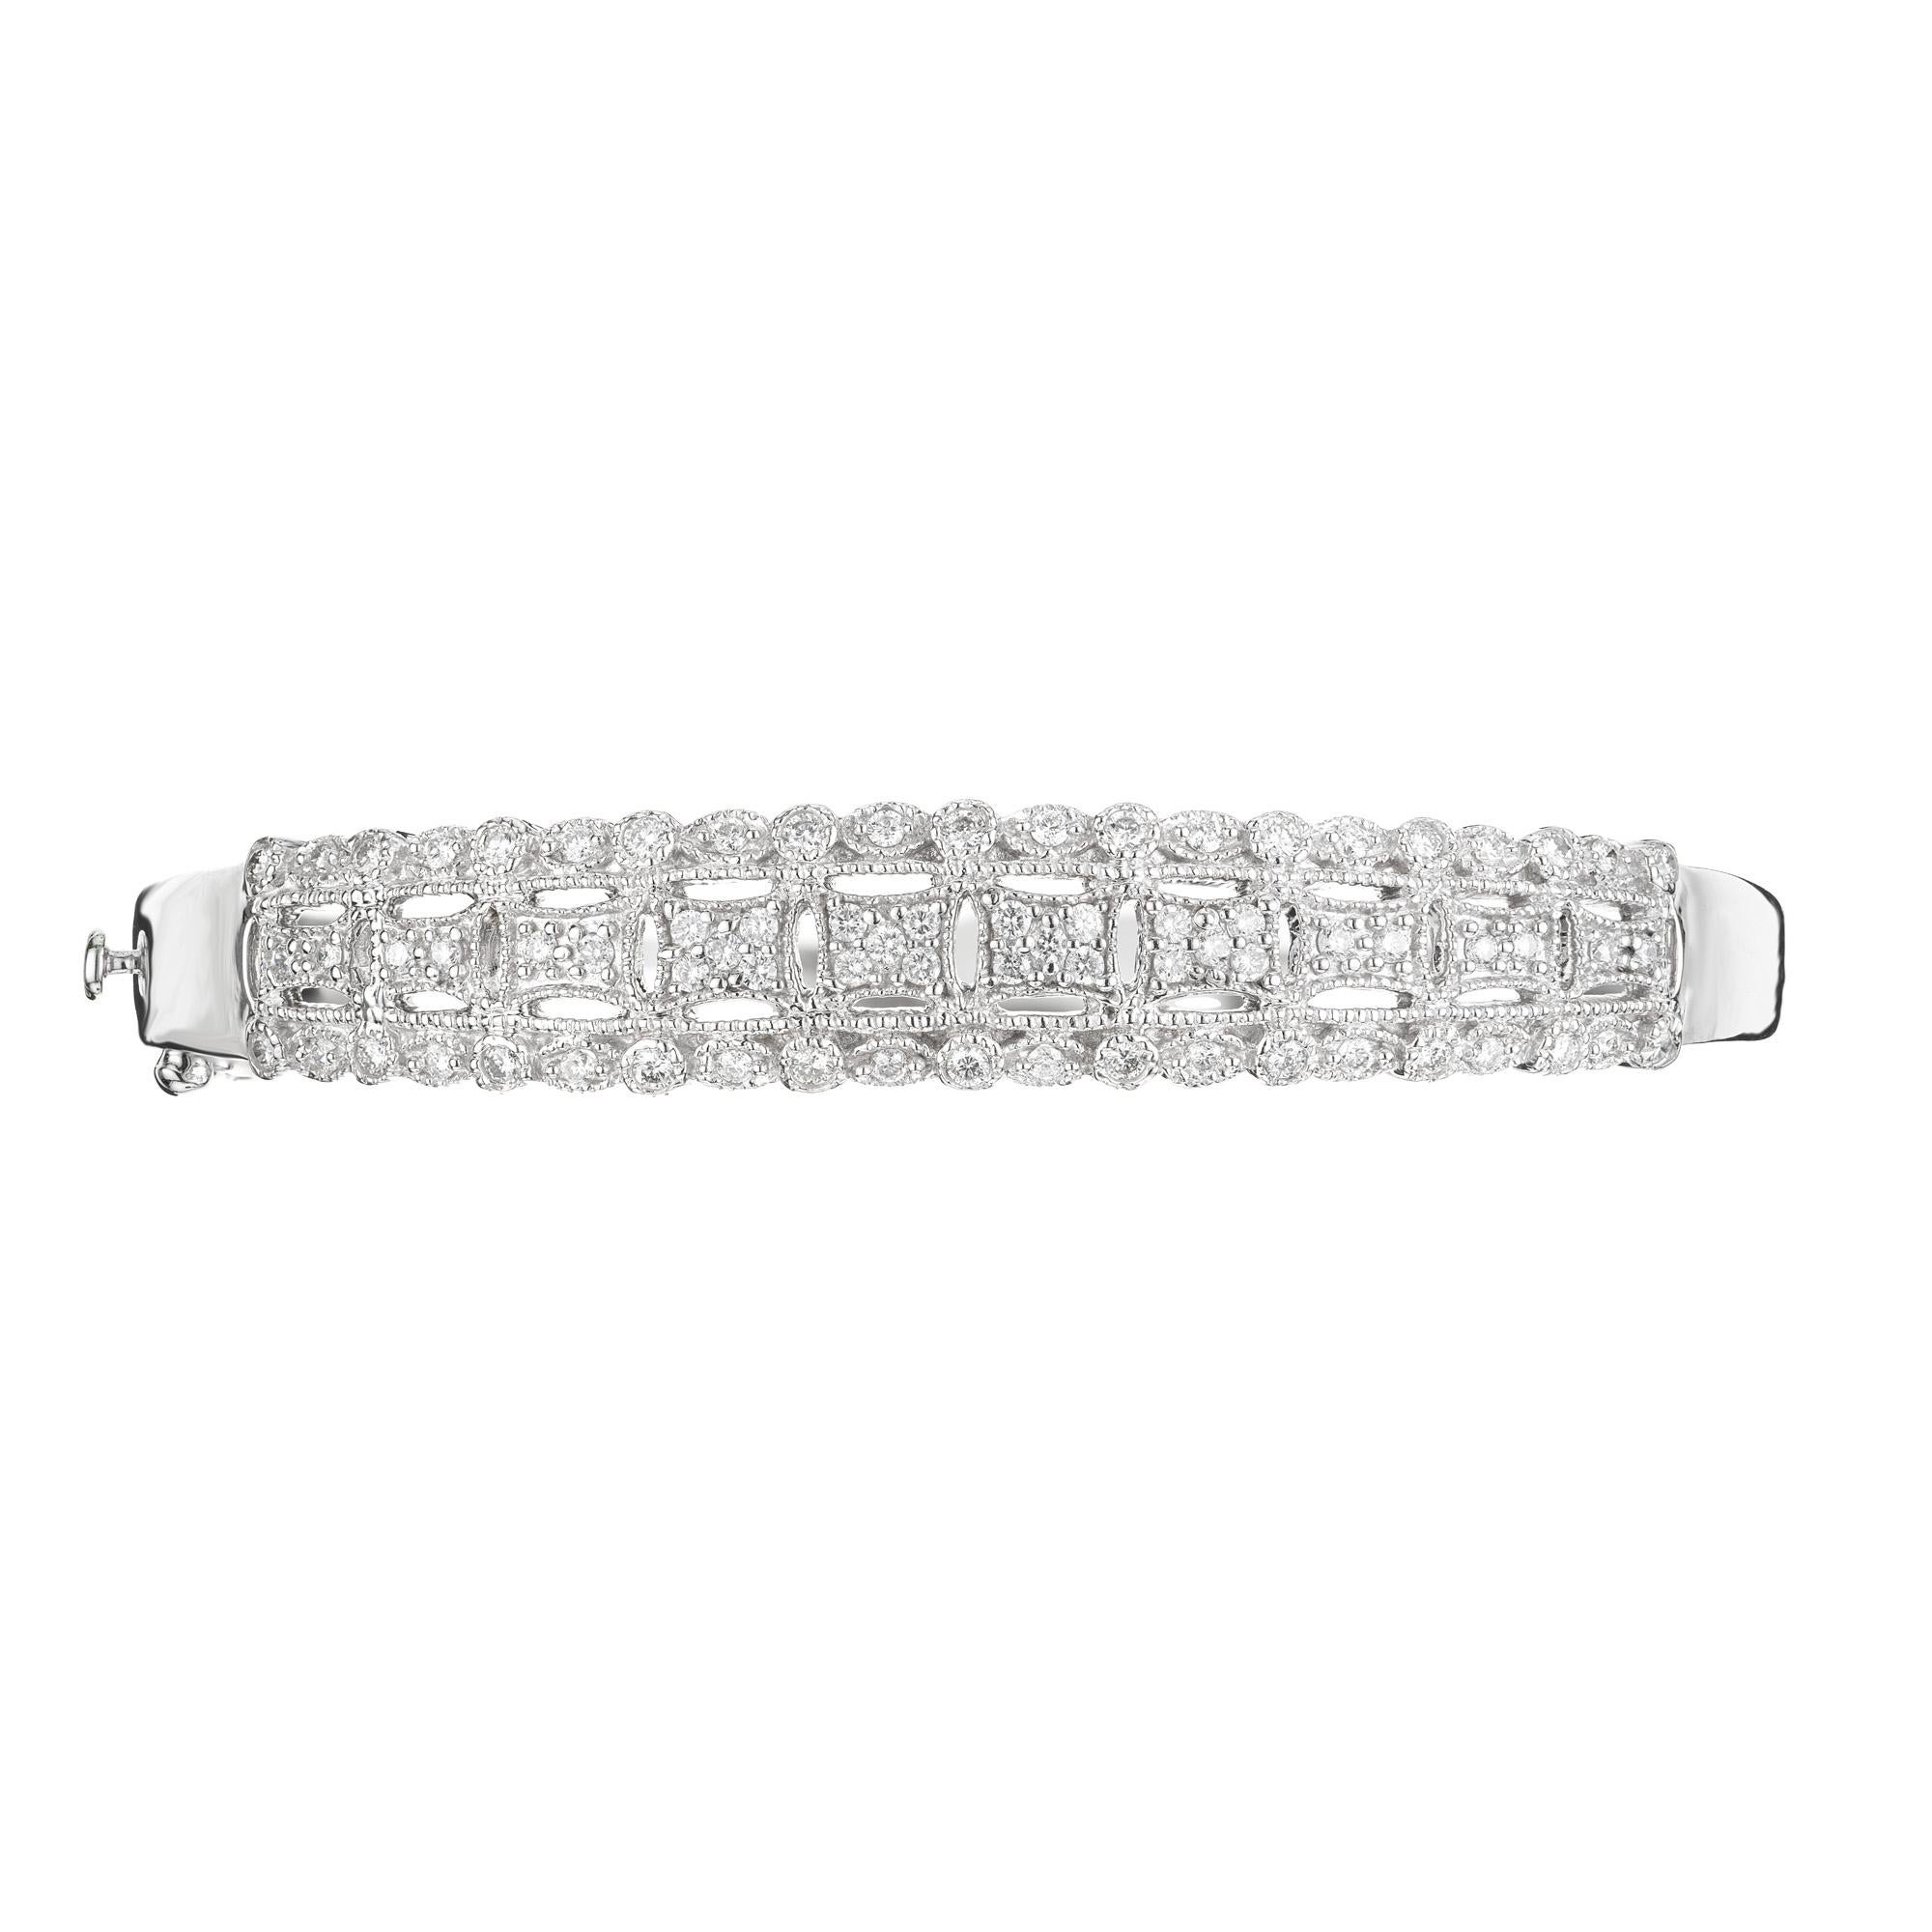 Bracelet en diamant. Ce bracelet du milieu du siècle 1960 est composé de 74 diamants ronds de pleine taille totalisant 1,20 ct.  Bracelet en or blanc 14k, très détaillé et ajouré. Il s'agit d'un bracelet à charnière qui permet de l'enfiler plus